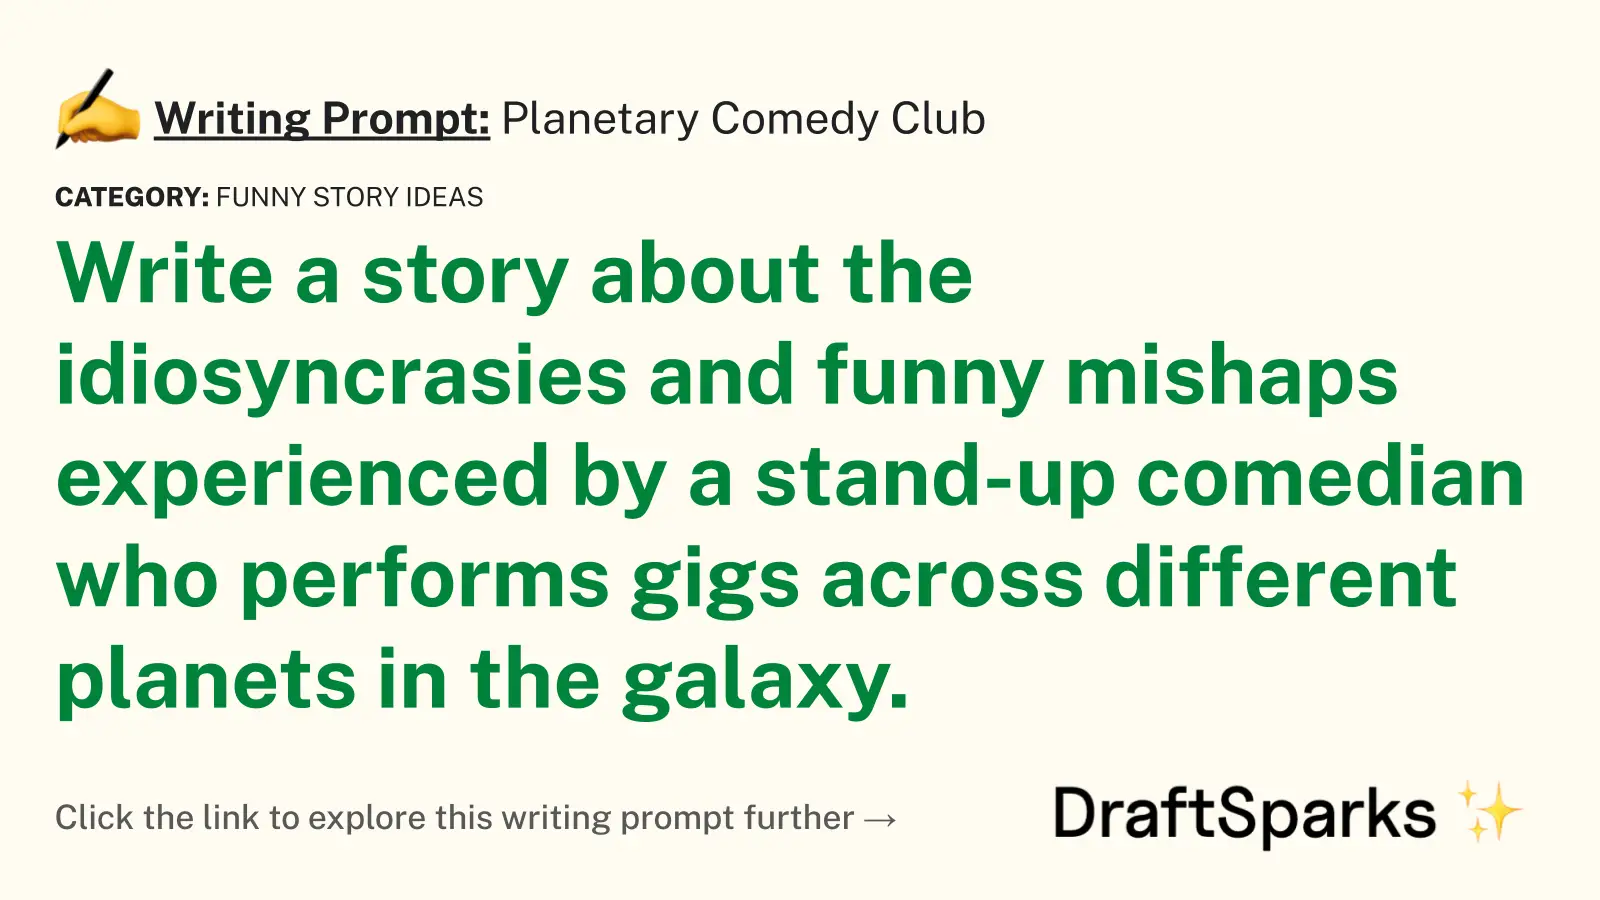 Planetary Comedy Club